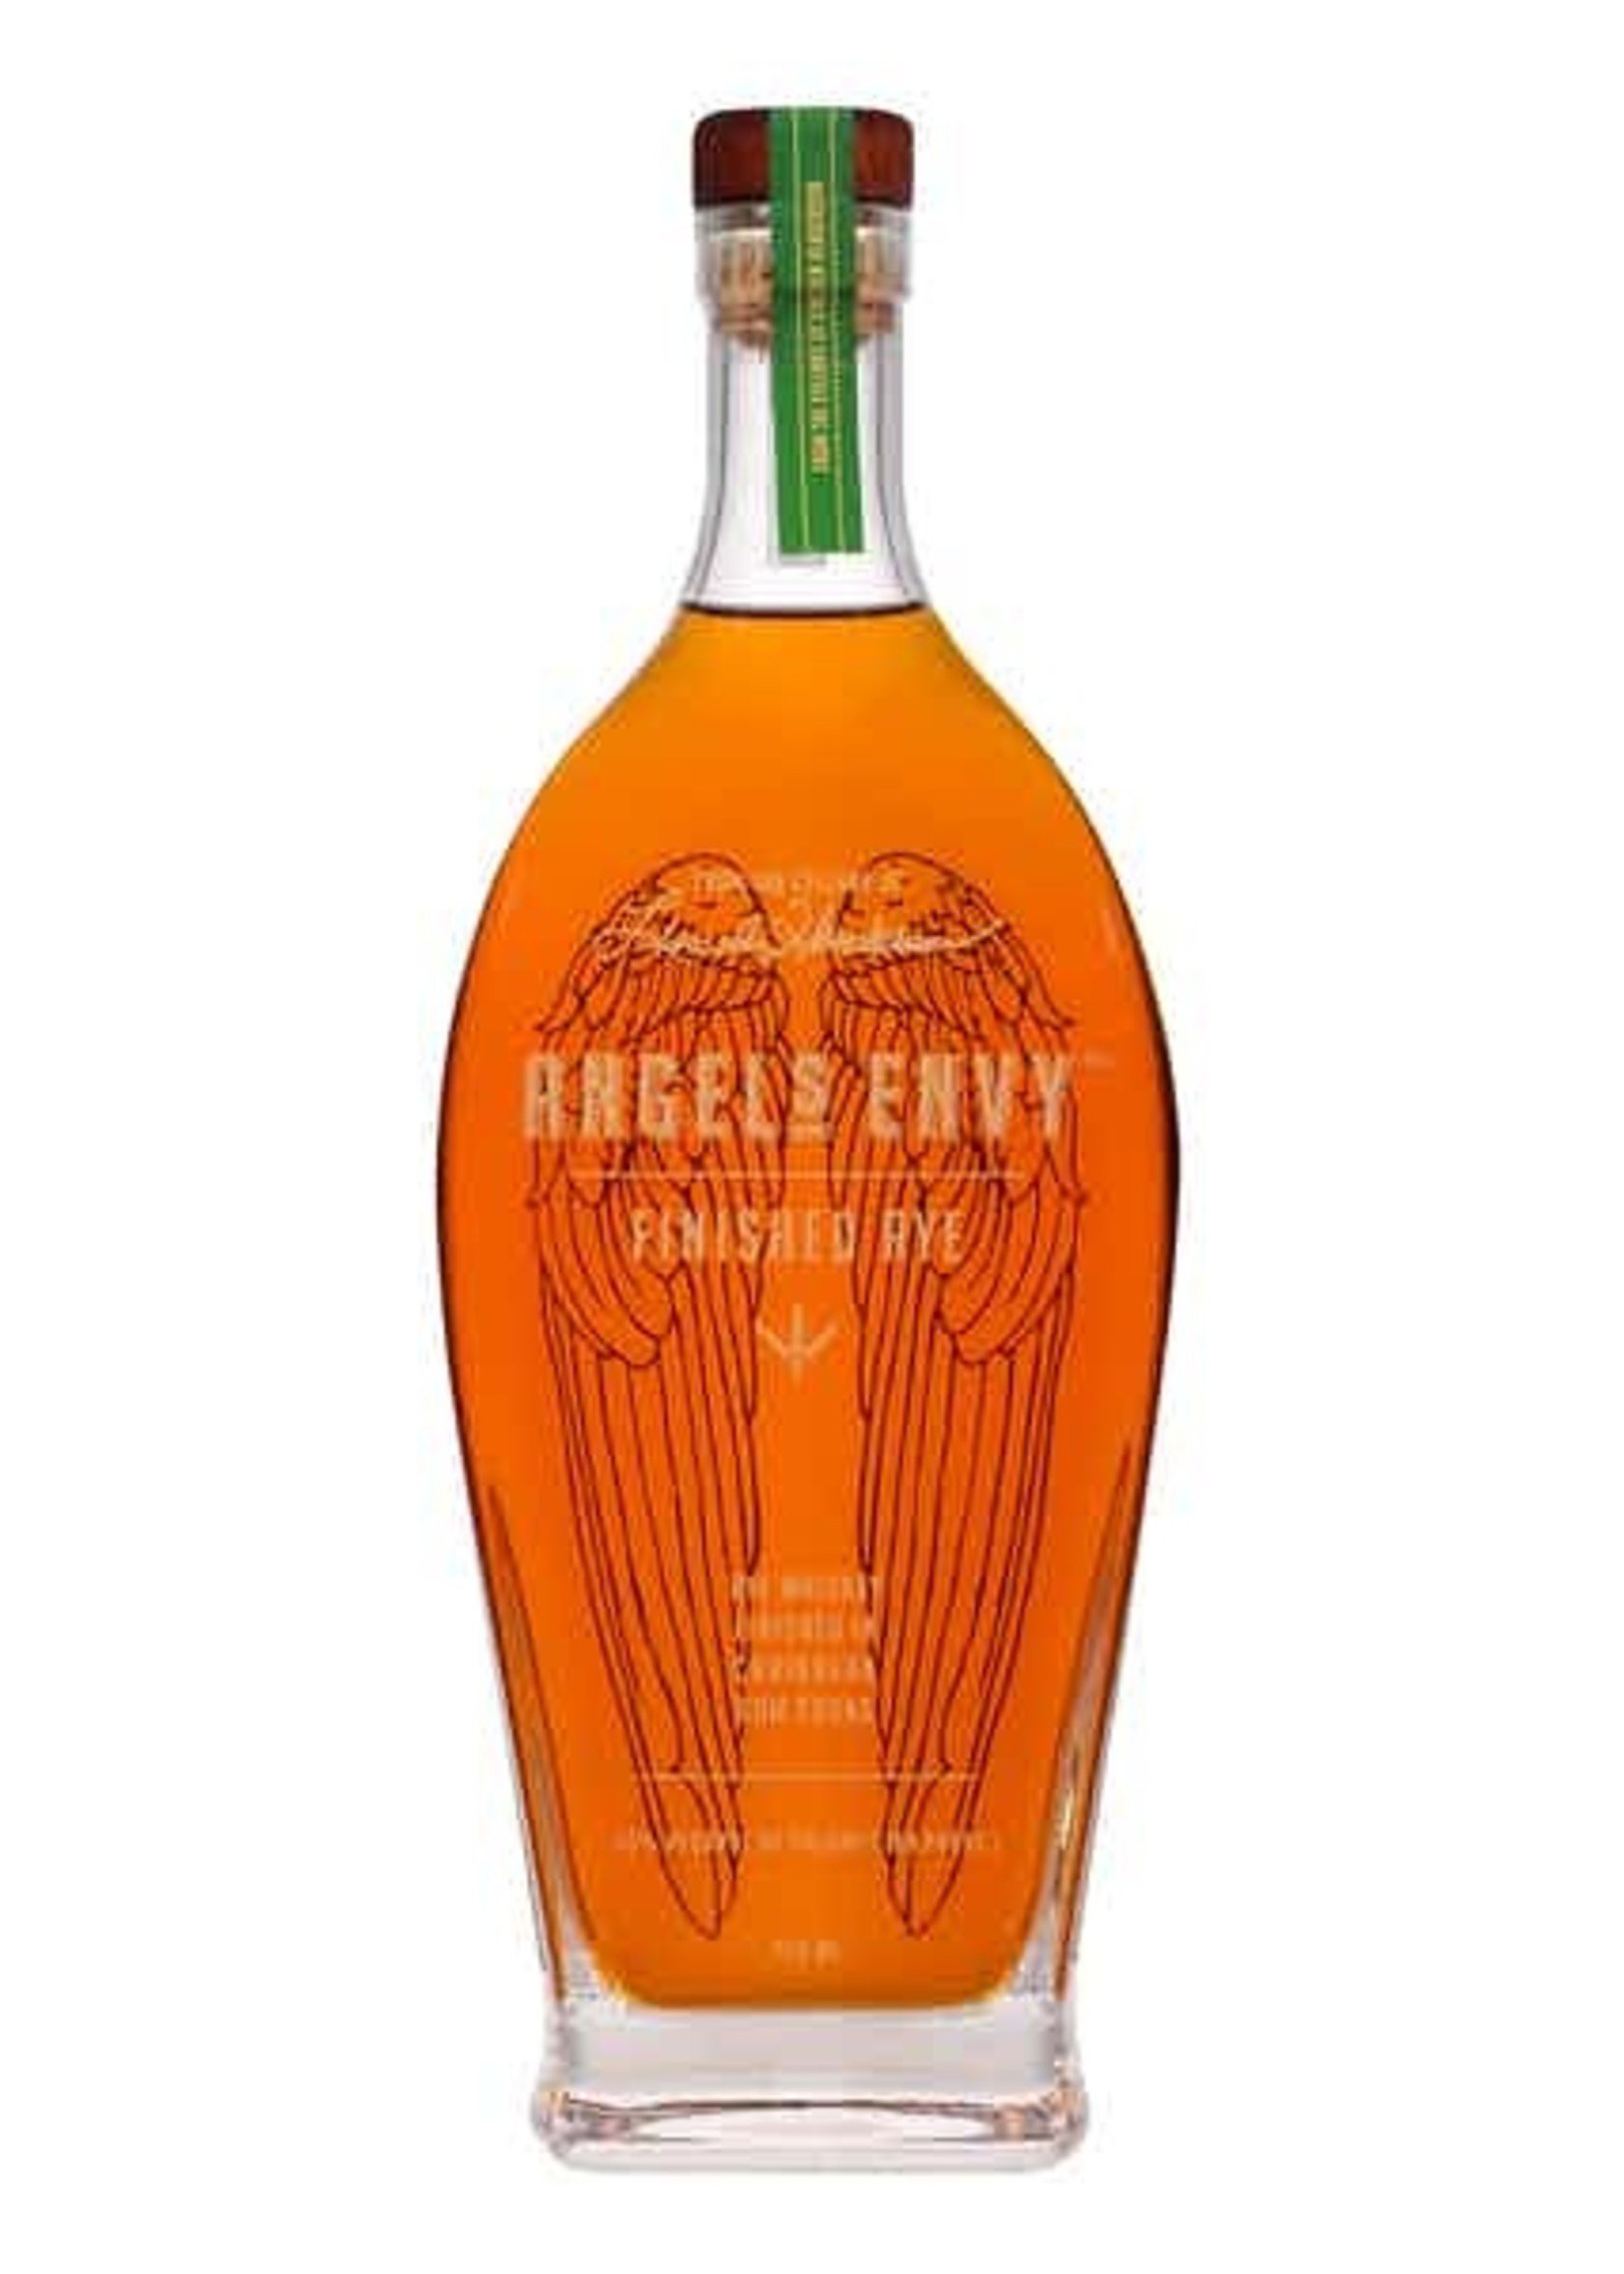 Angels Envy Angel's Envy Finished Rye Whiskey